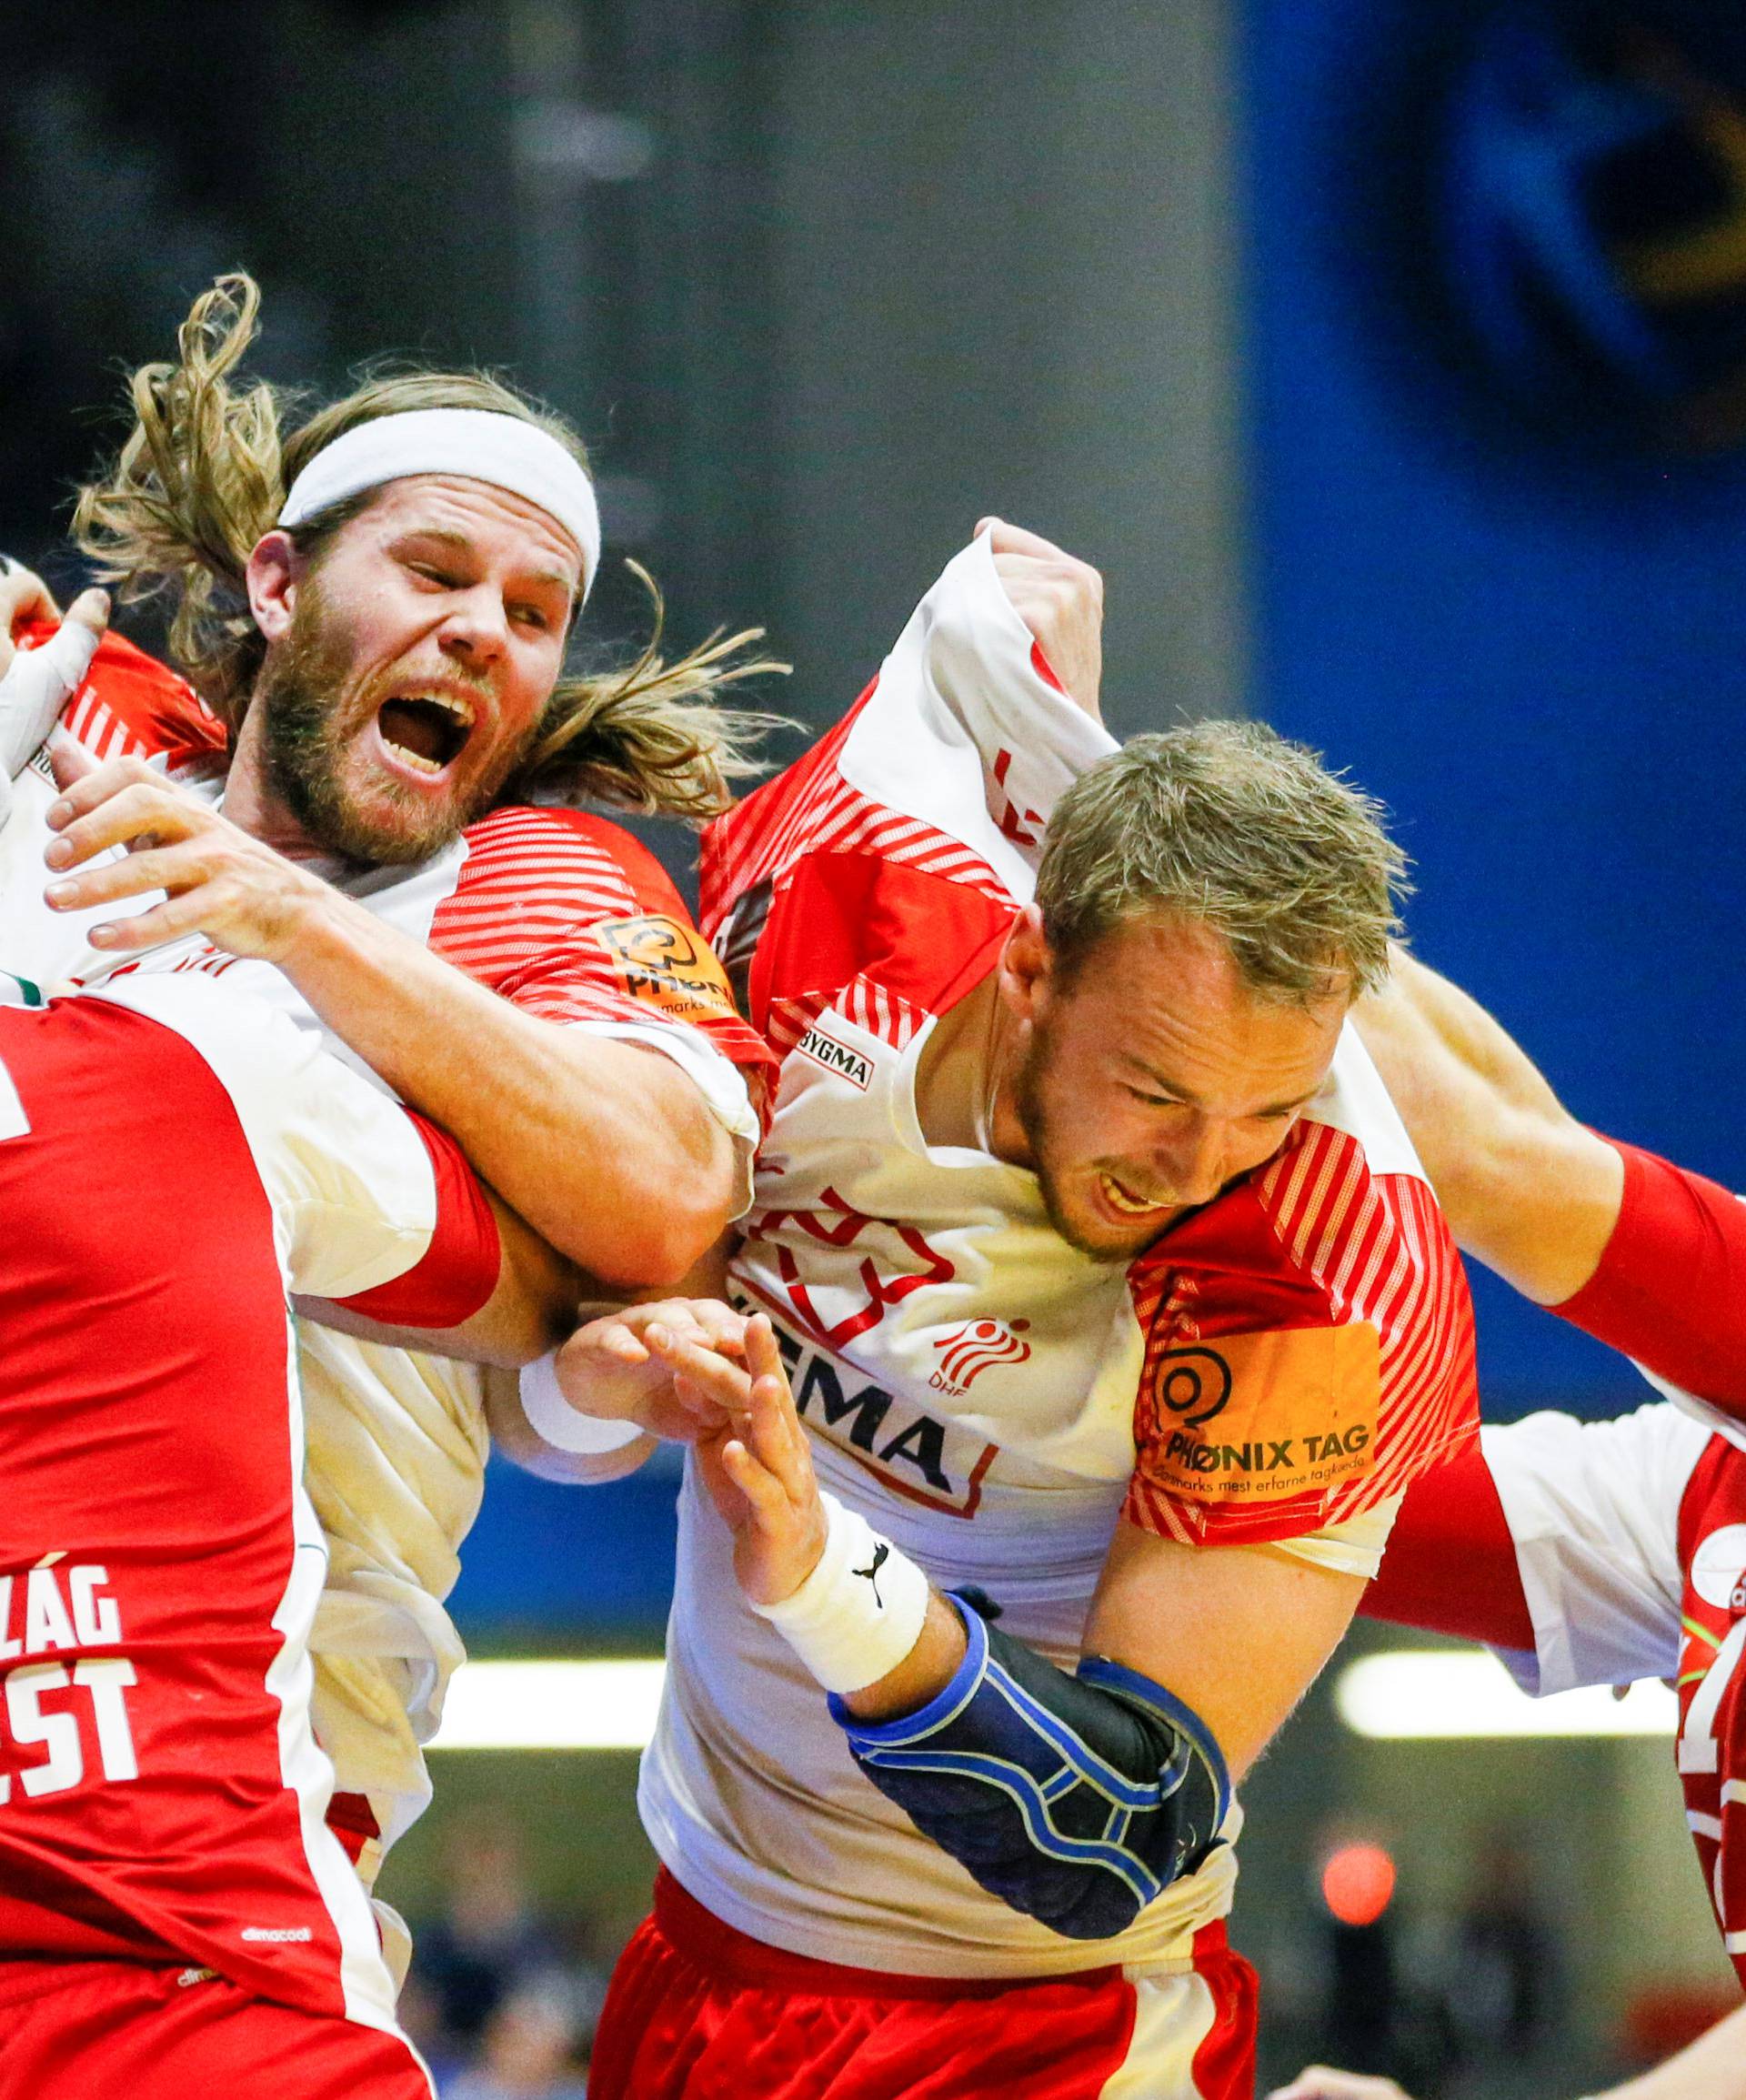 Menâs Handball - Denmark v Hungary - 2017 Men's World Championship Second Round, Eighth Finals